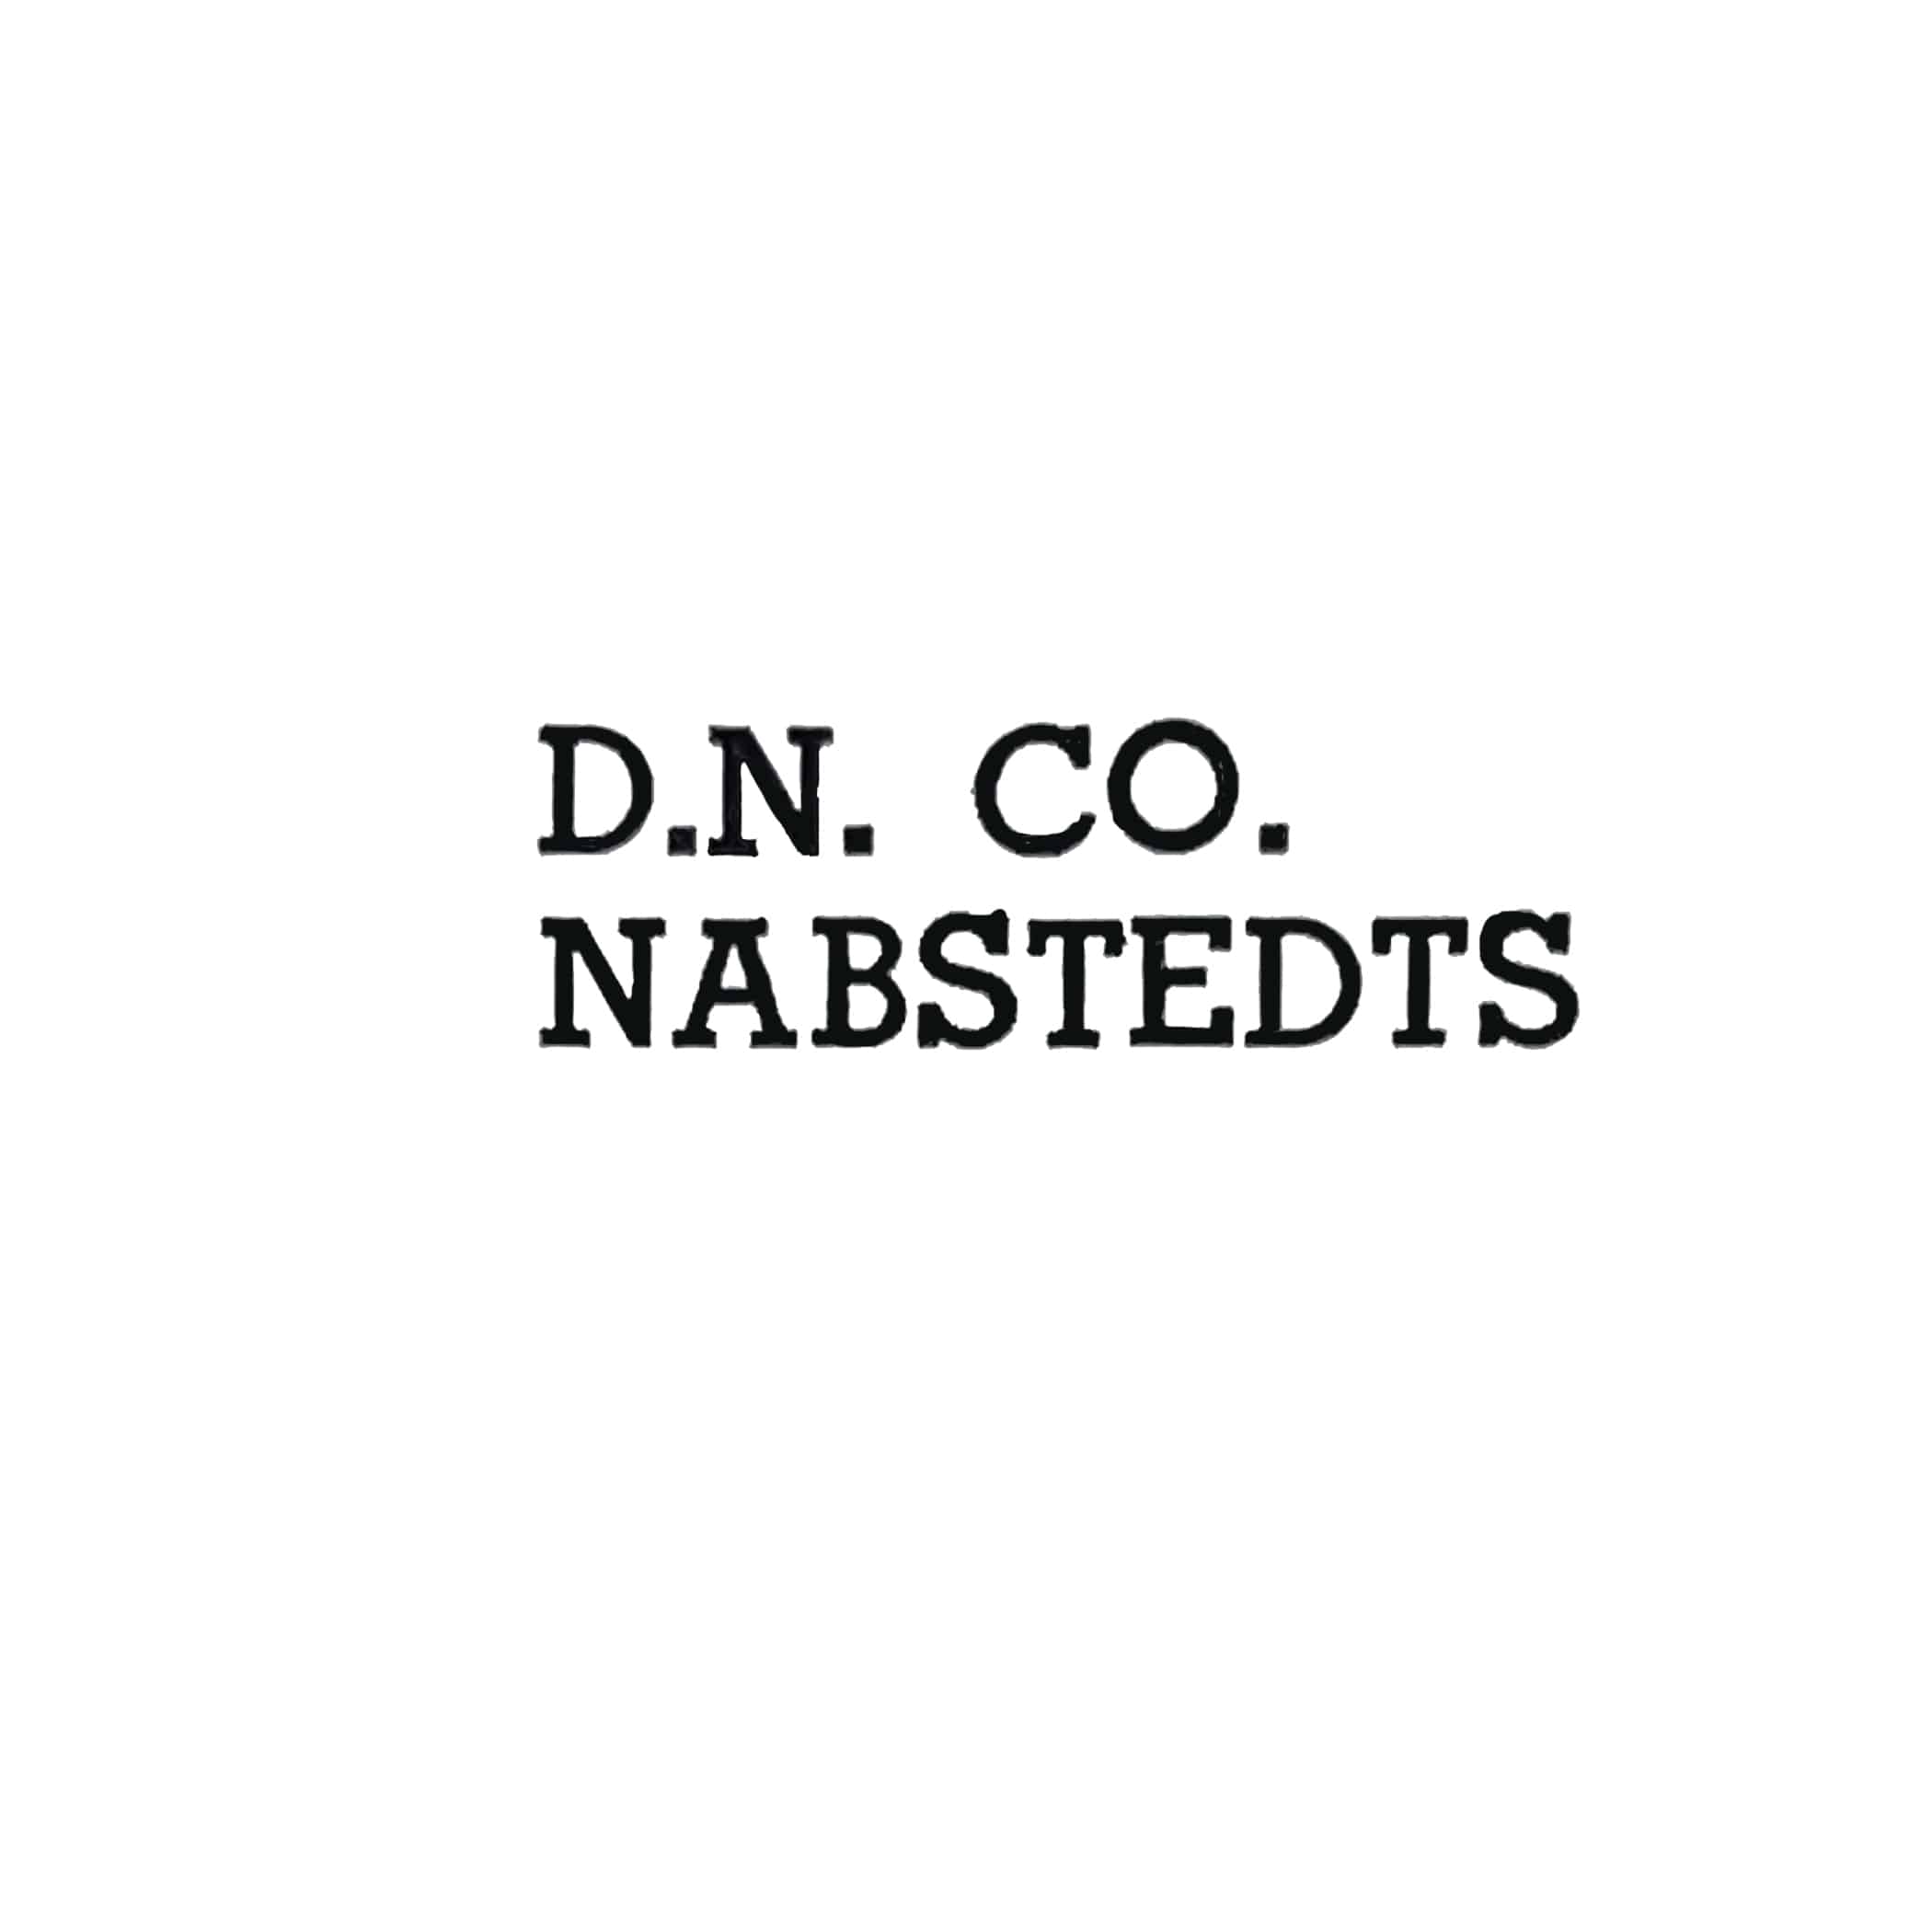 Nabstedt Co., Dave